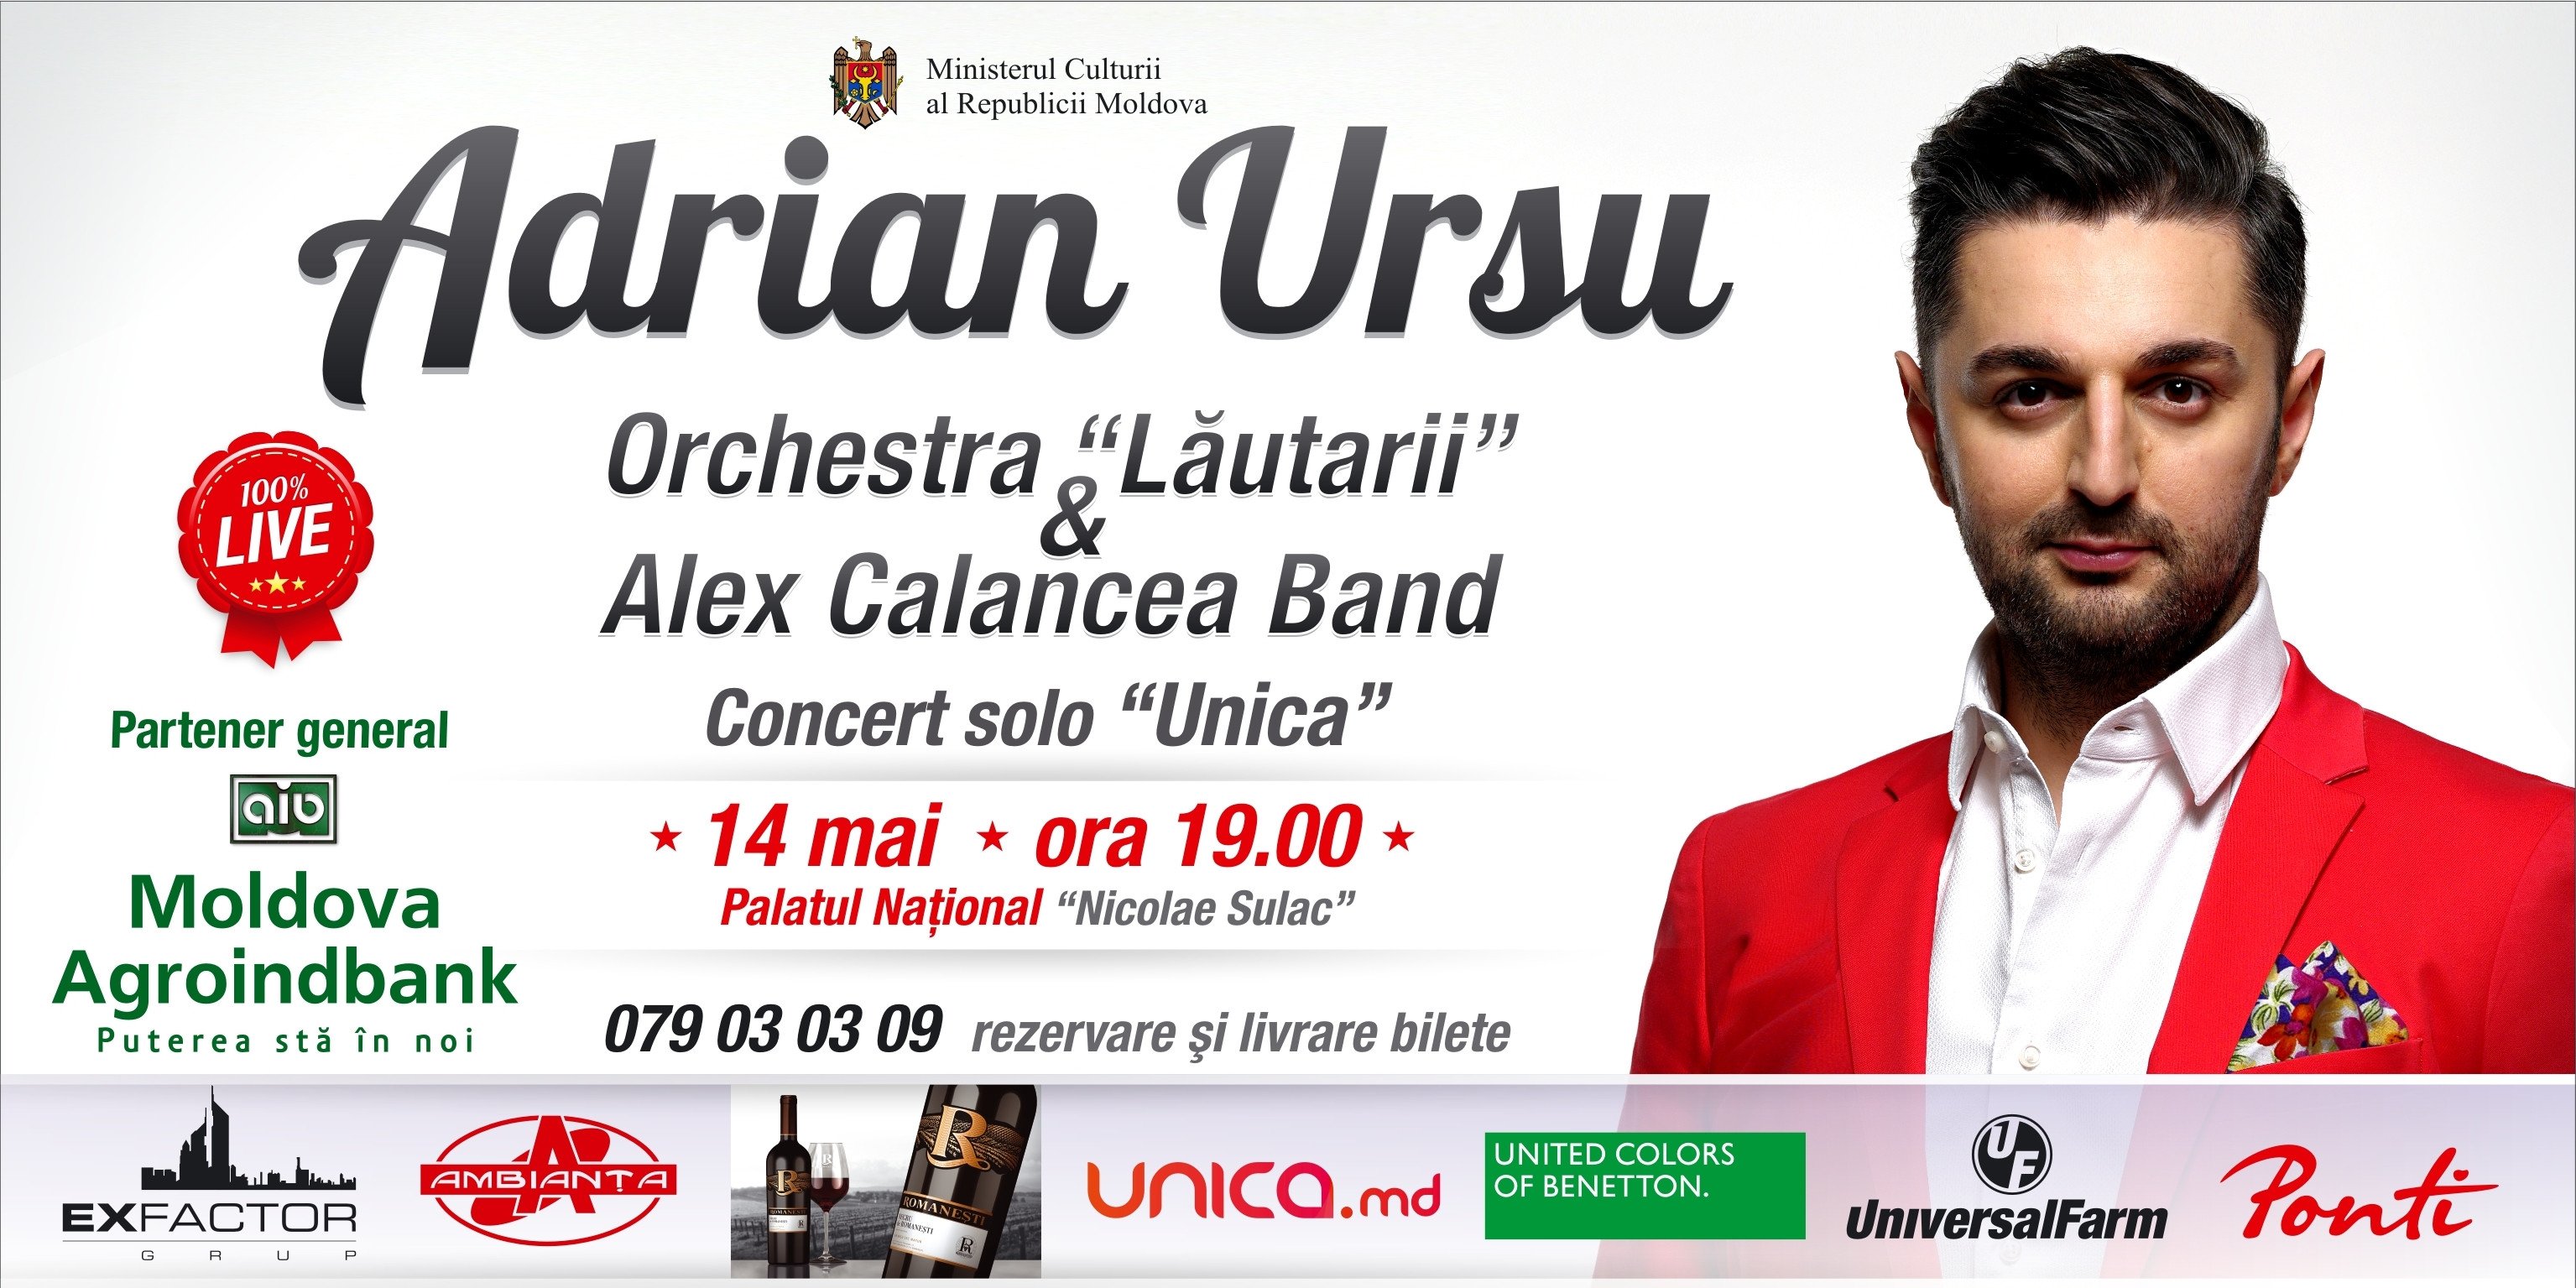 Adrian Ursu acompaniat de Orchestra Lautarii si Bandul lui Alex Calancea 